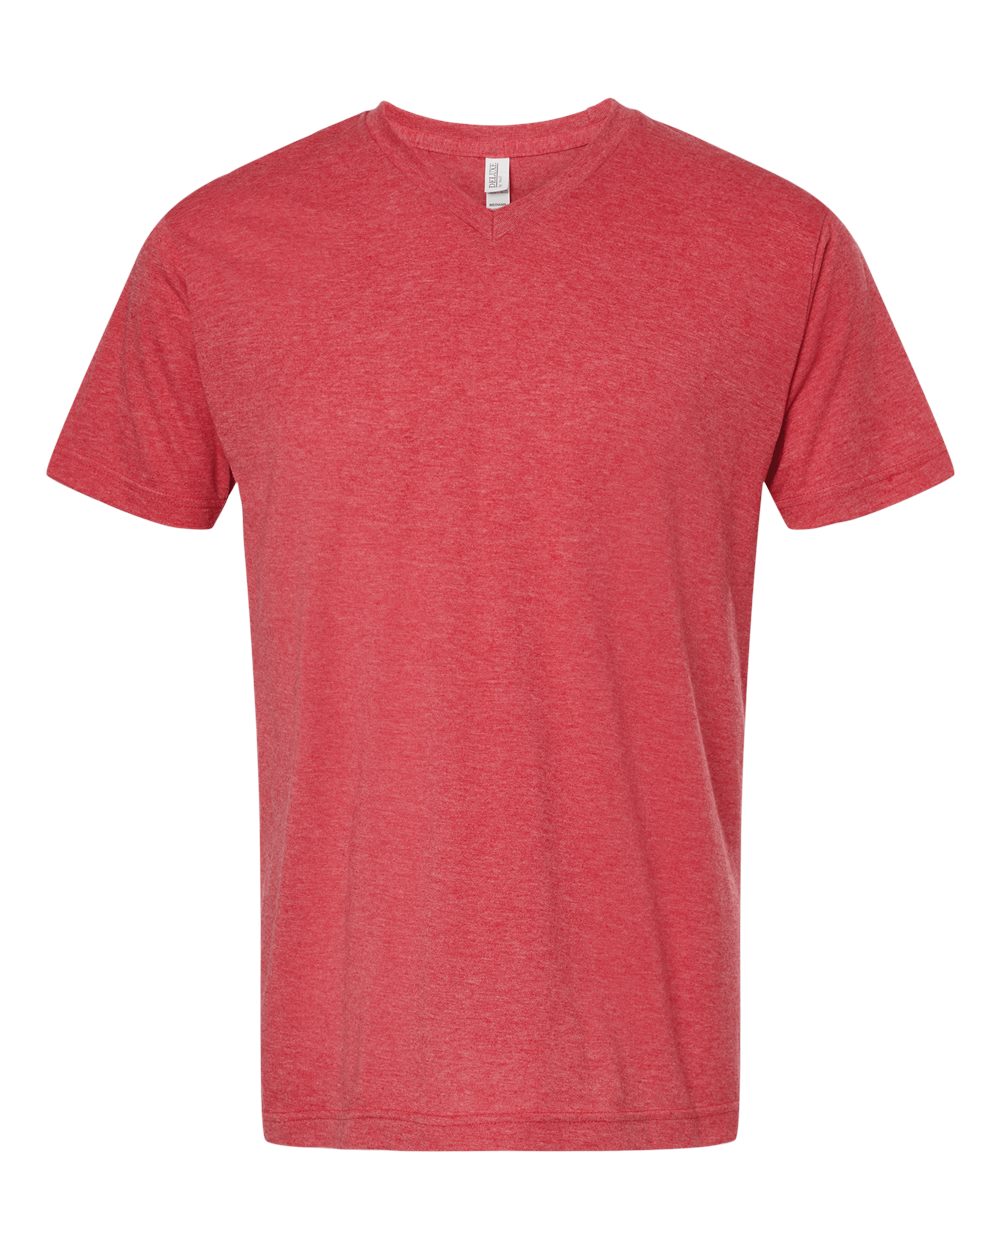 Deluxe Blend V-Neck - Men's T-Shirt - M&O 3543